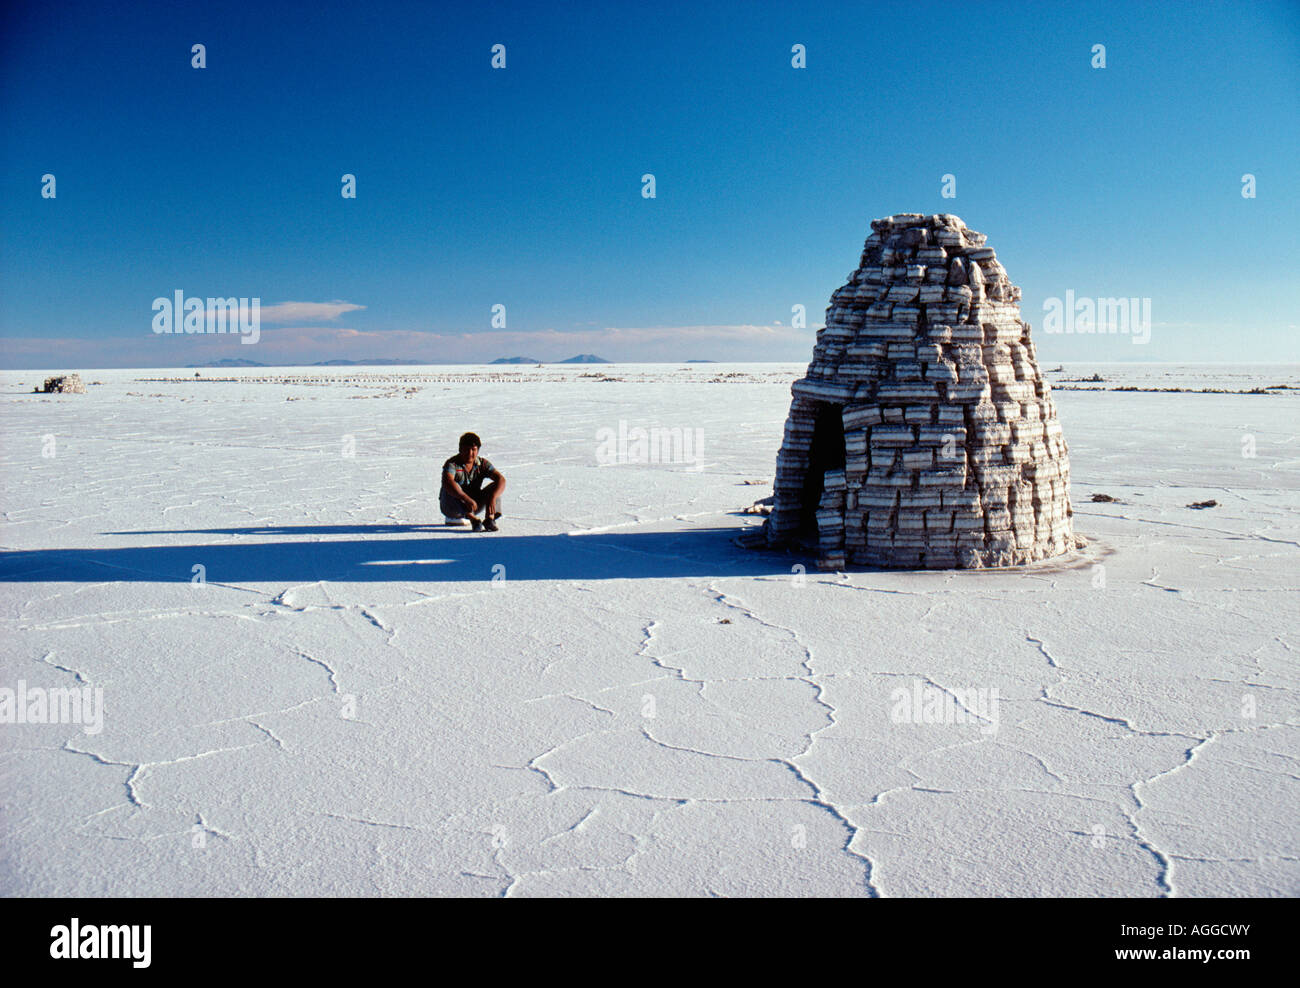 Bolivien, Uyuni, Mann sitzt von Iglu machte der Salzziegel in Uyuni Salzsee Stockfoto